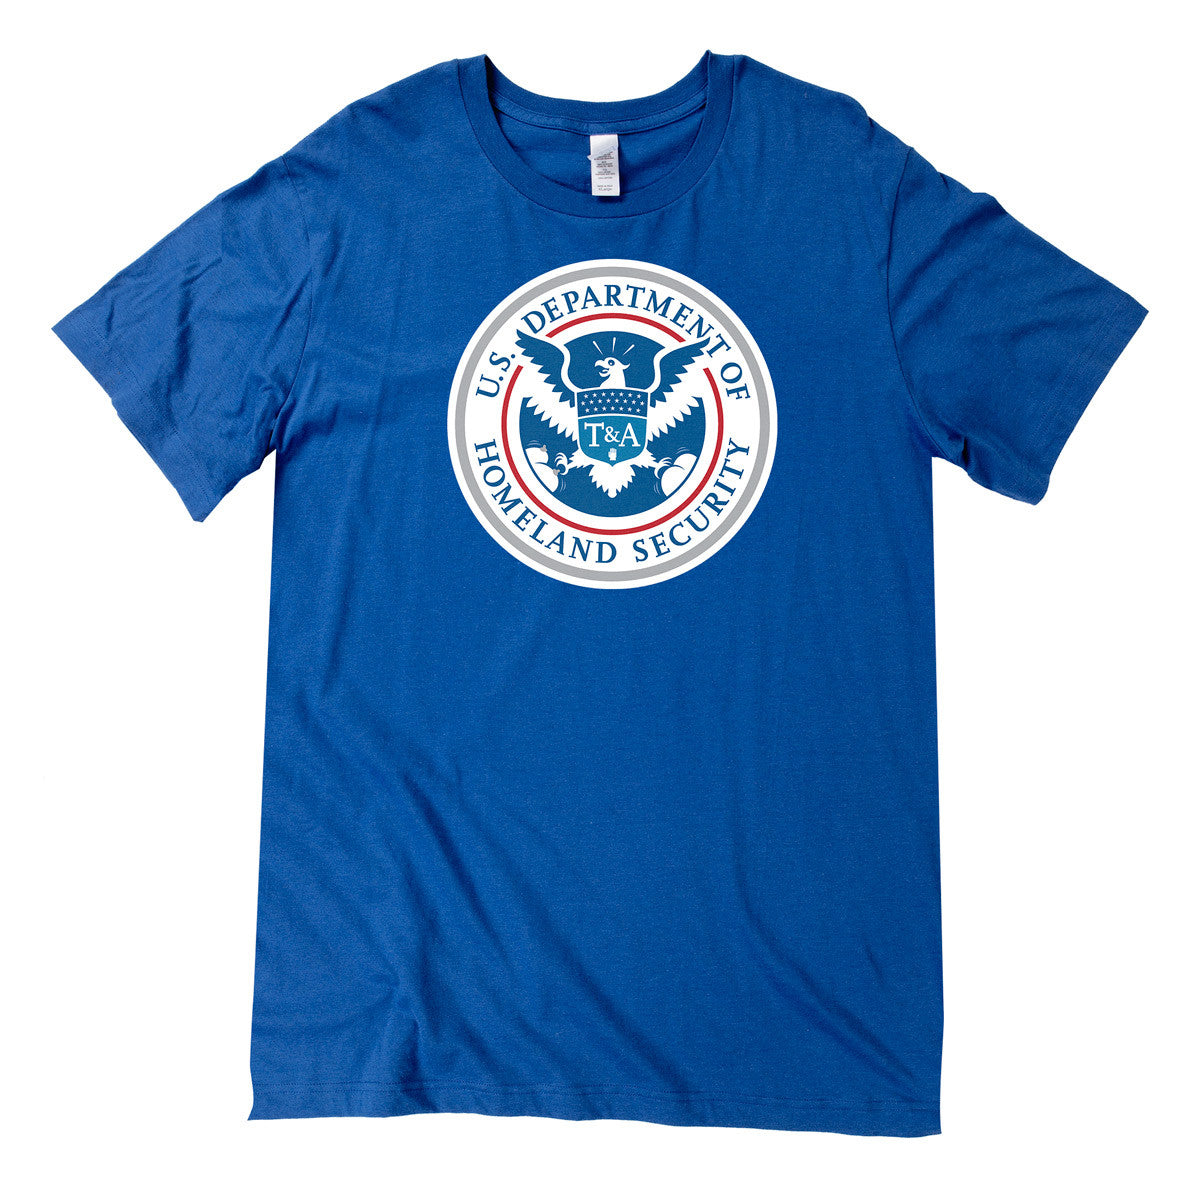 TSA T&amp;A Shirt